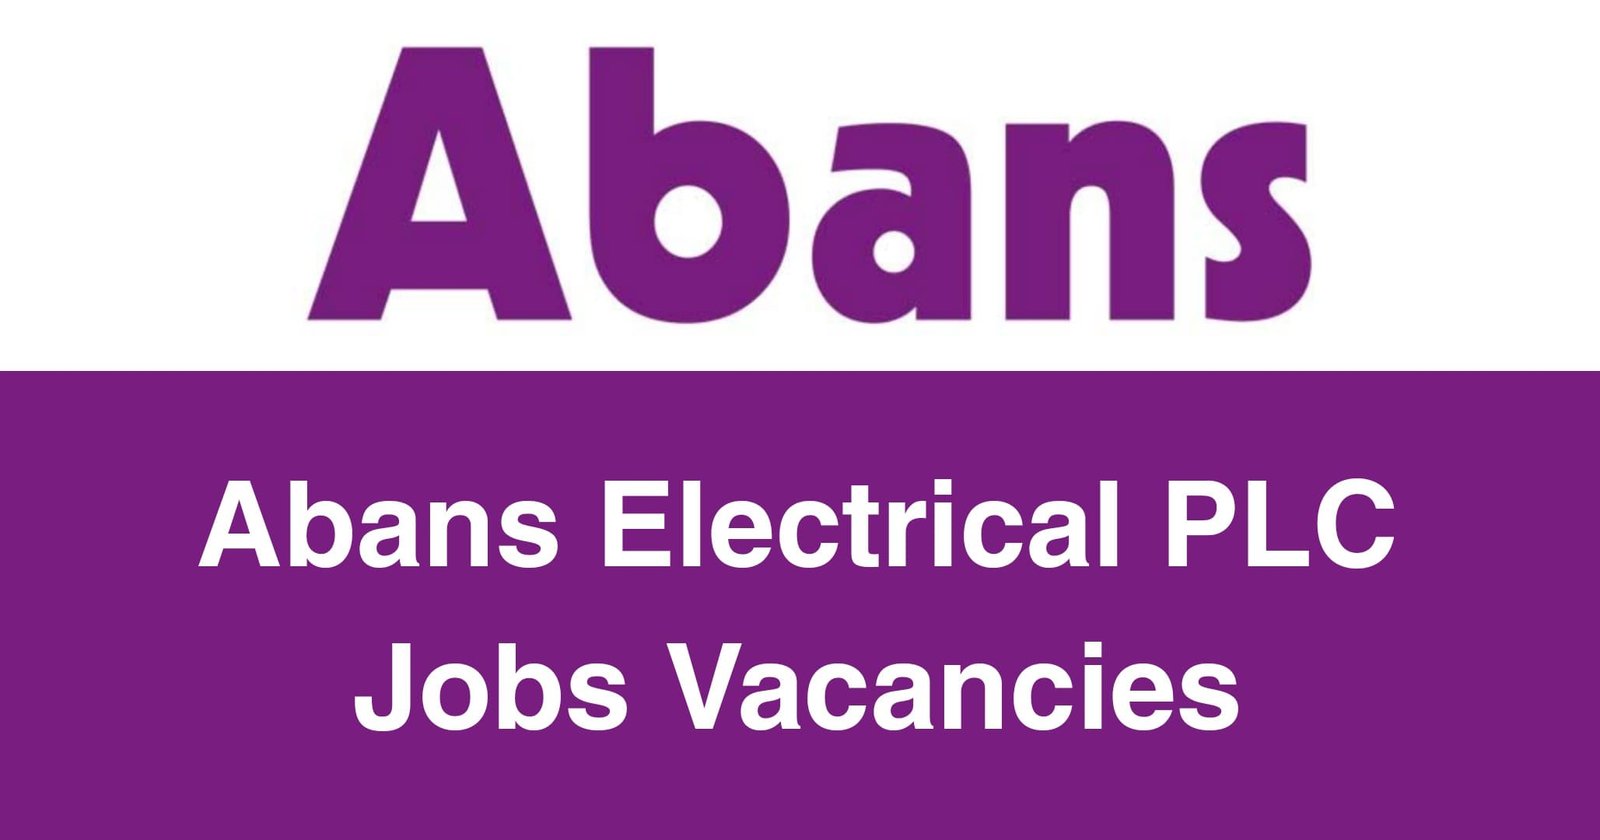 Abans Electrical PLC Jobs Vacancies